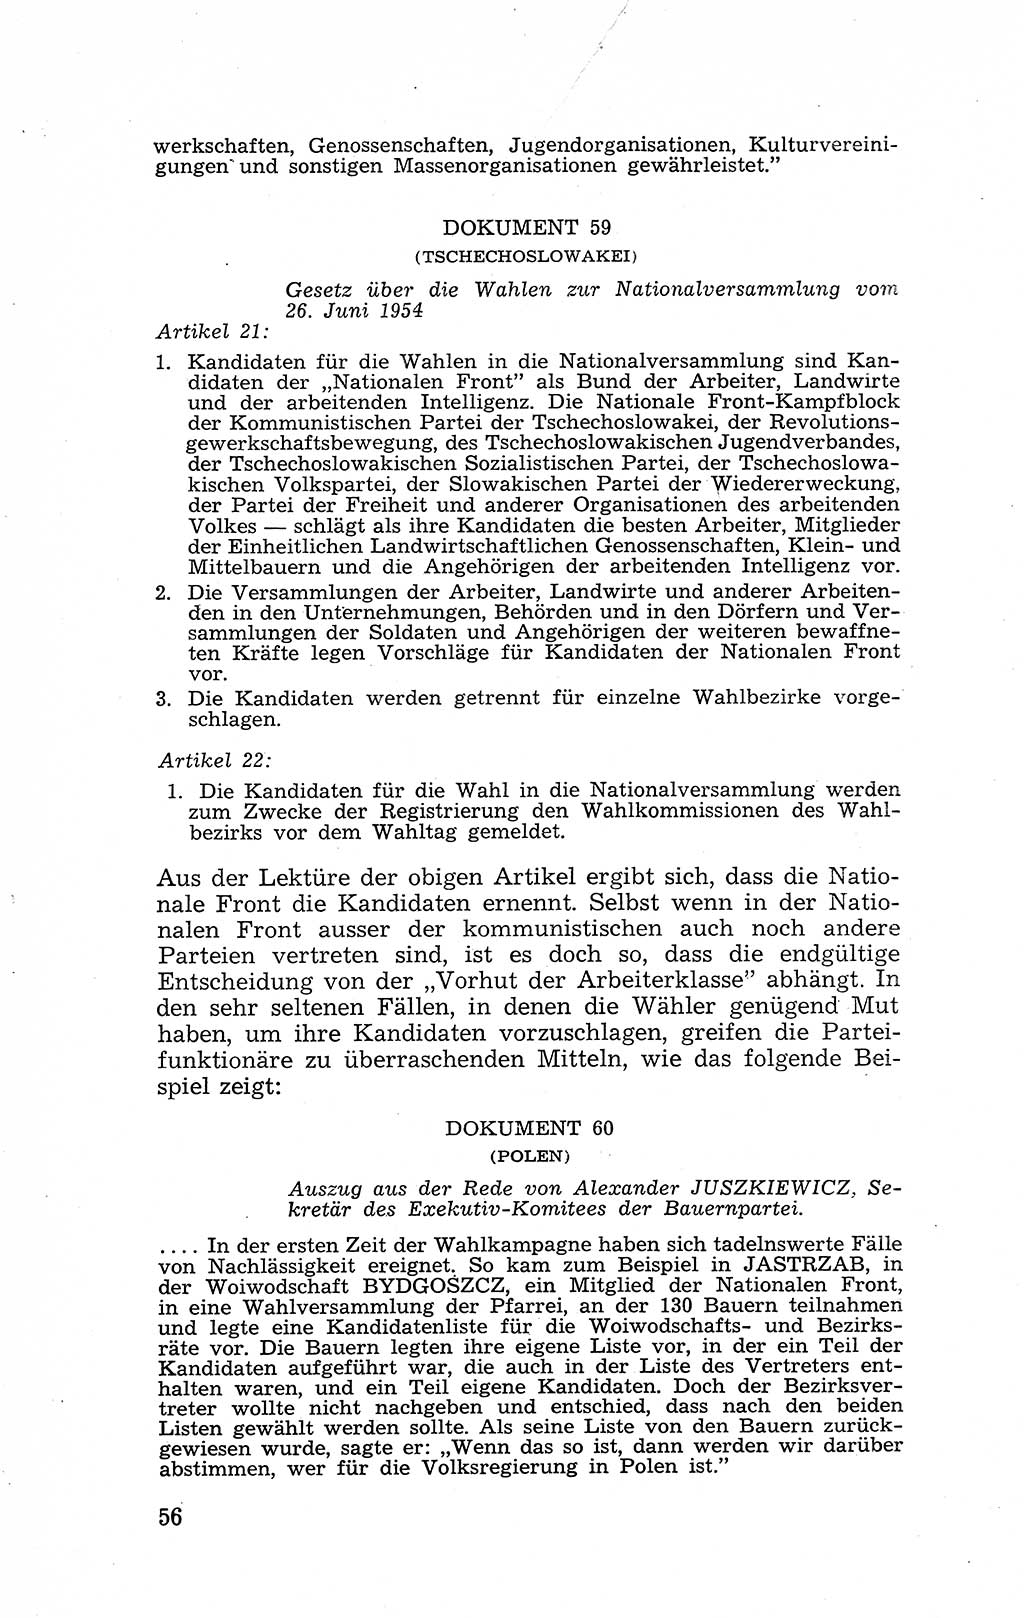 Recht in Fesseln, Dokumente, Internationale Juristen-Kommission [Bundesrepublik Deutschland (BRD)] 1955, Seite 56 (R. Dok. IJK BRD 1955, S. 56)